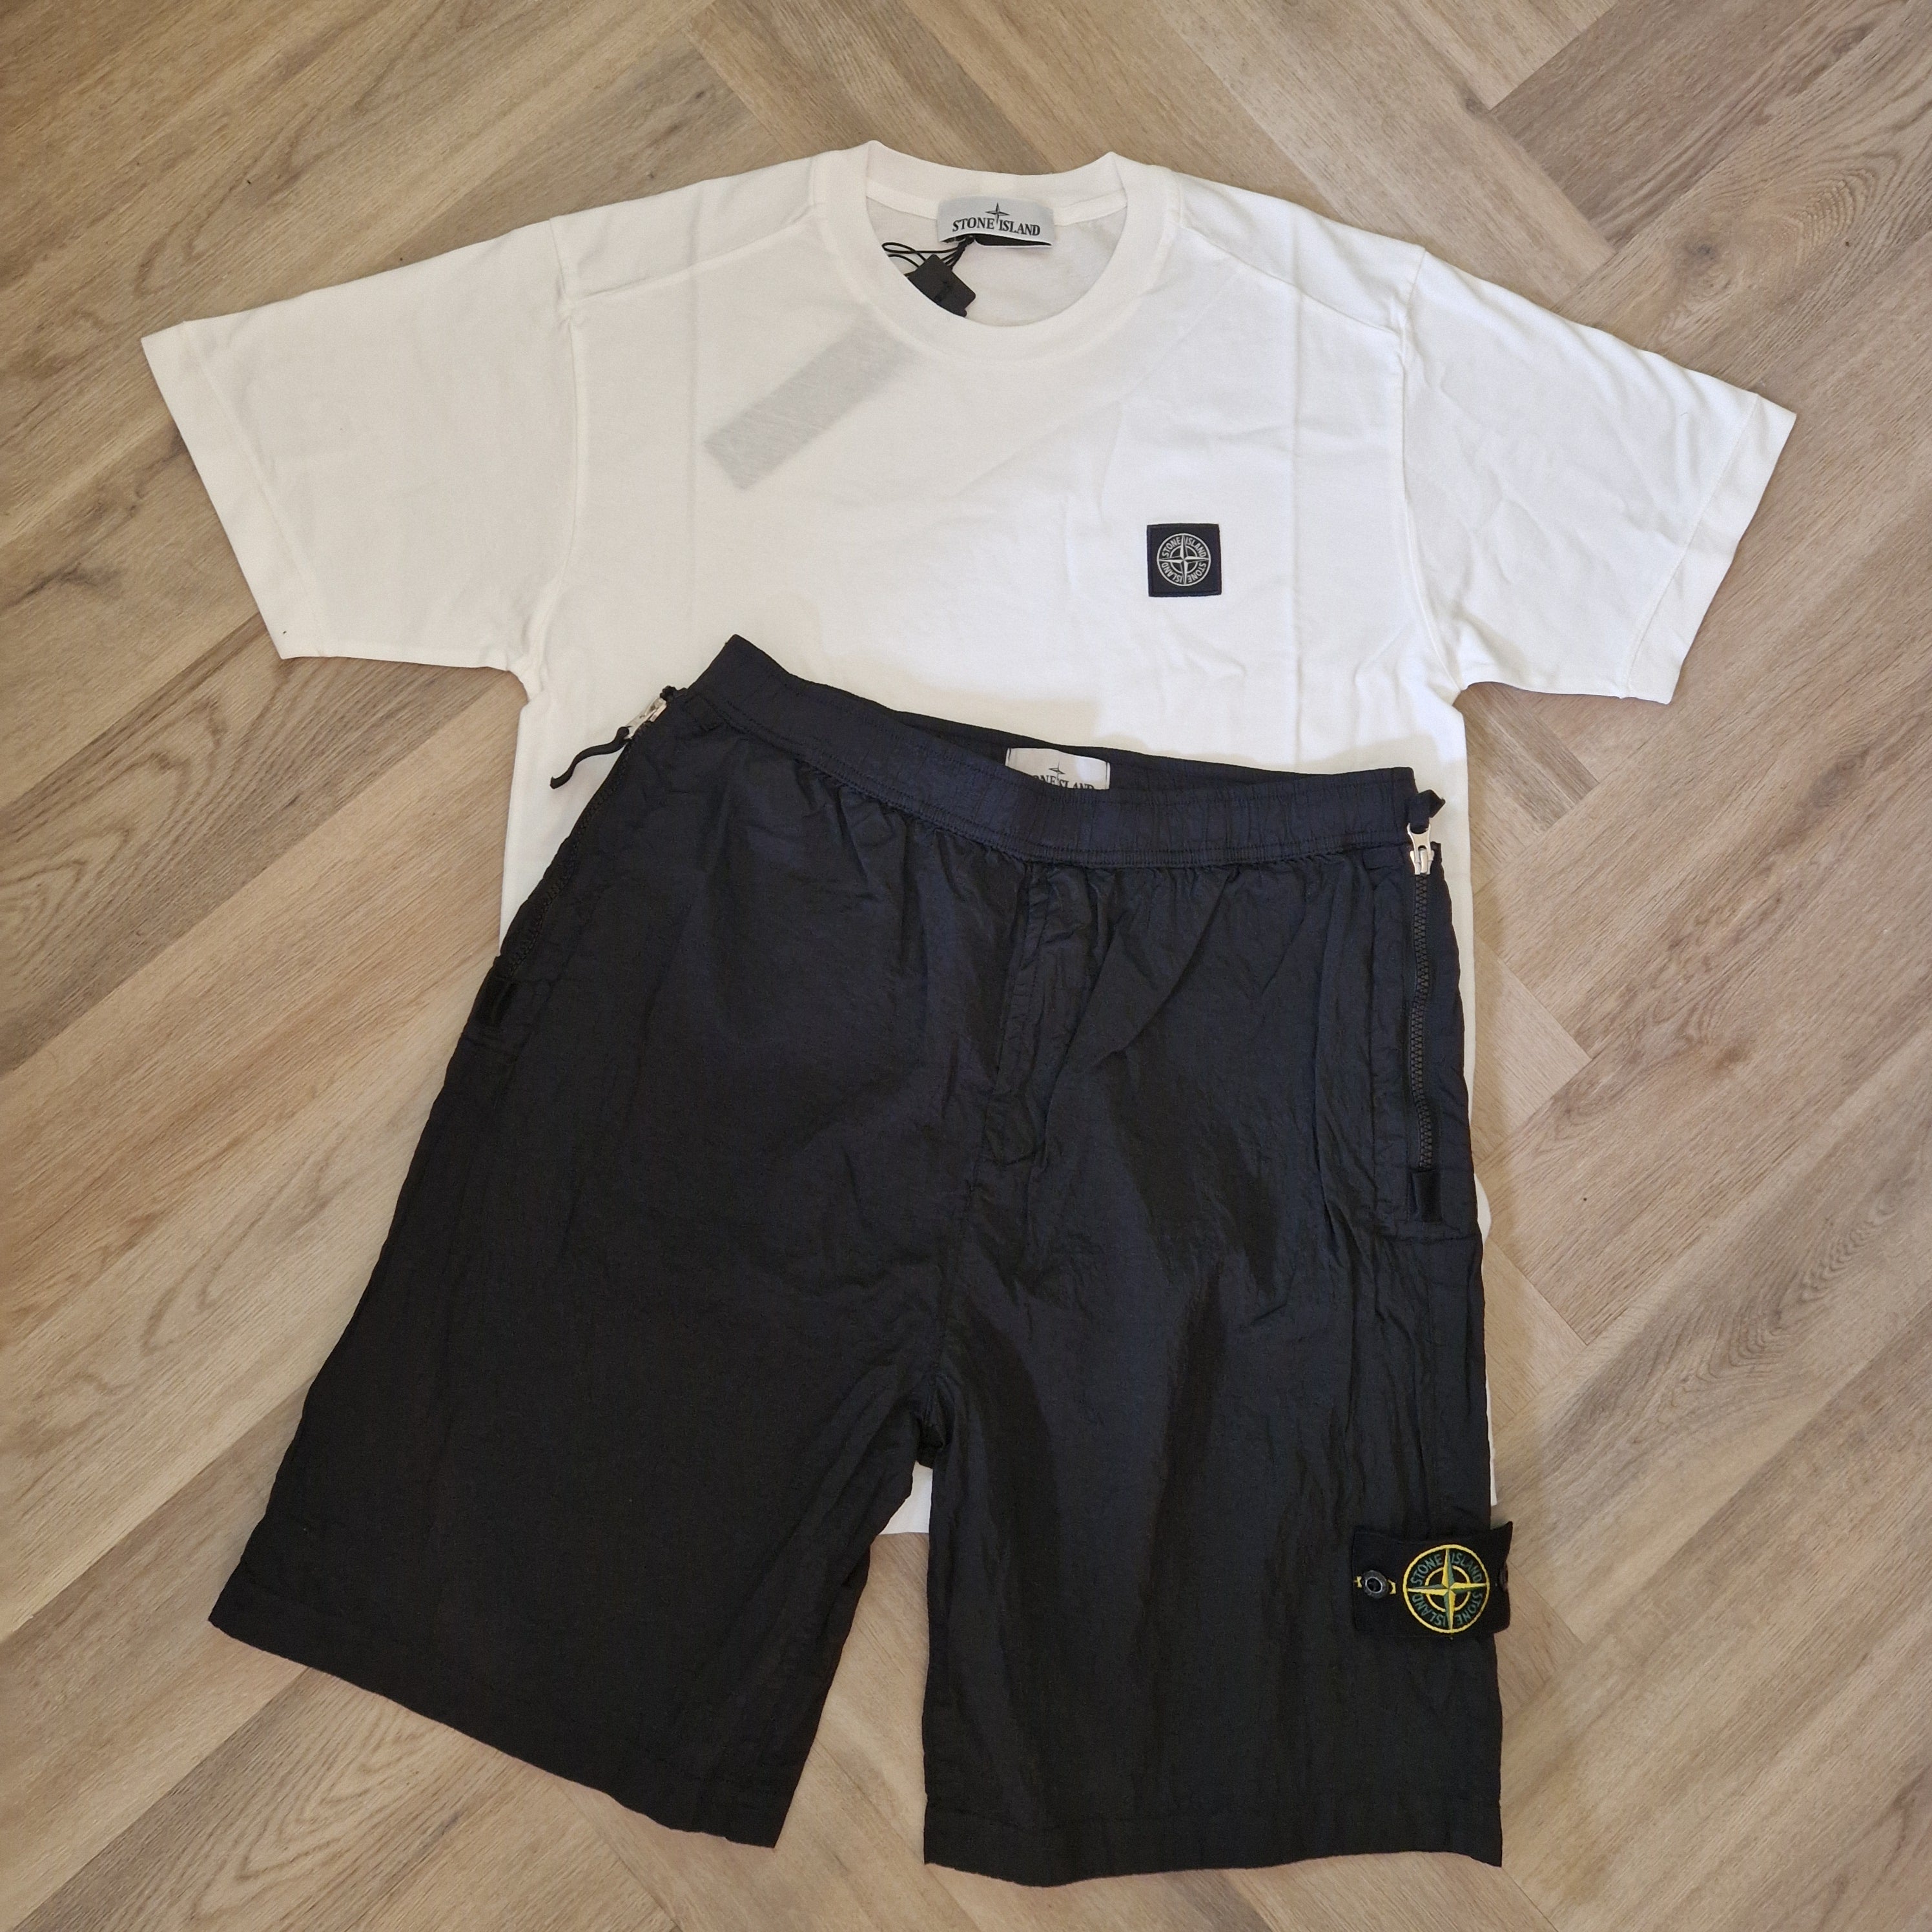 Stone Island Nylon Badge Shorts Set Black/White